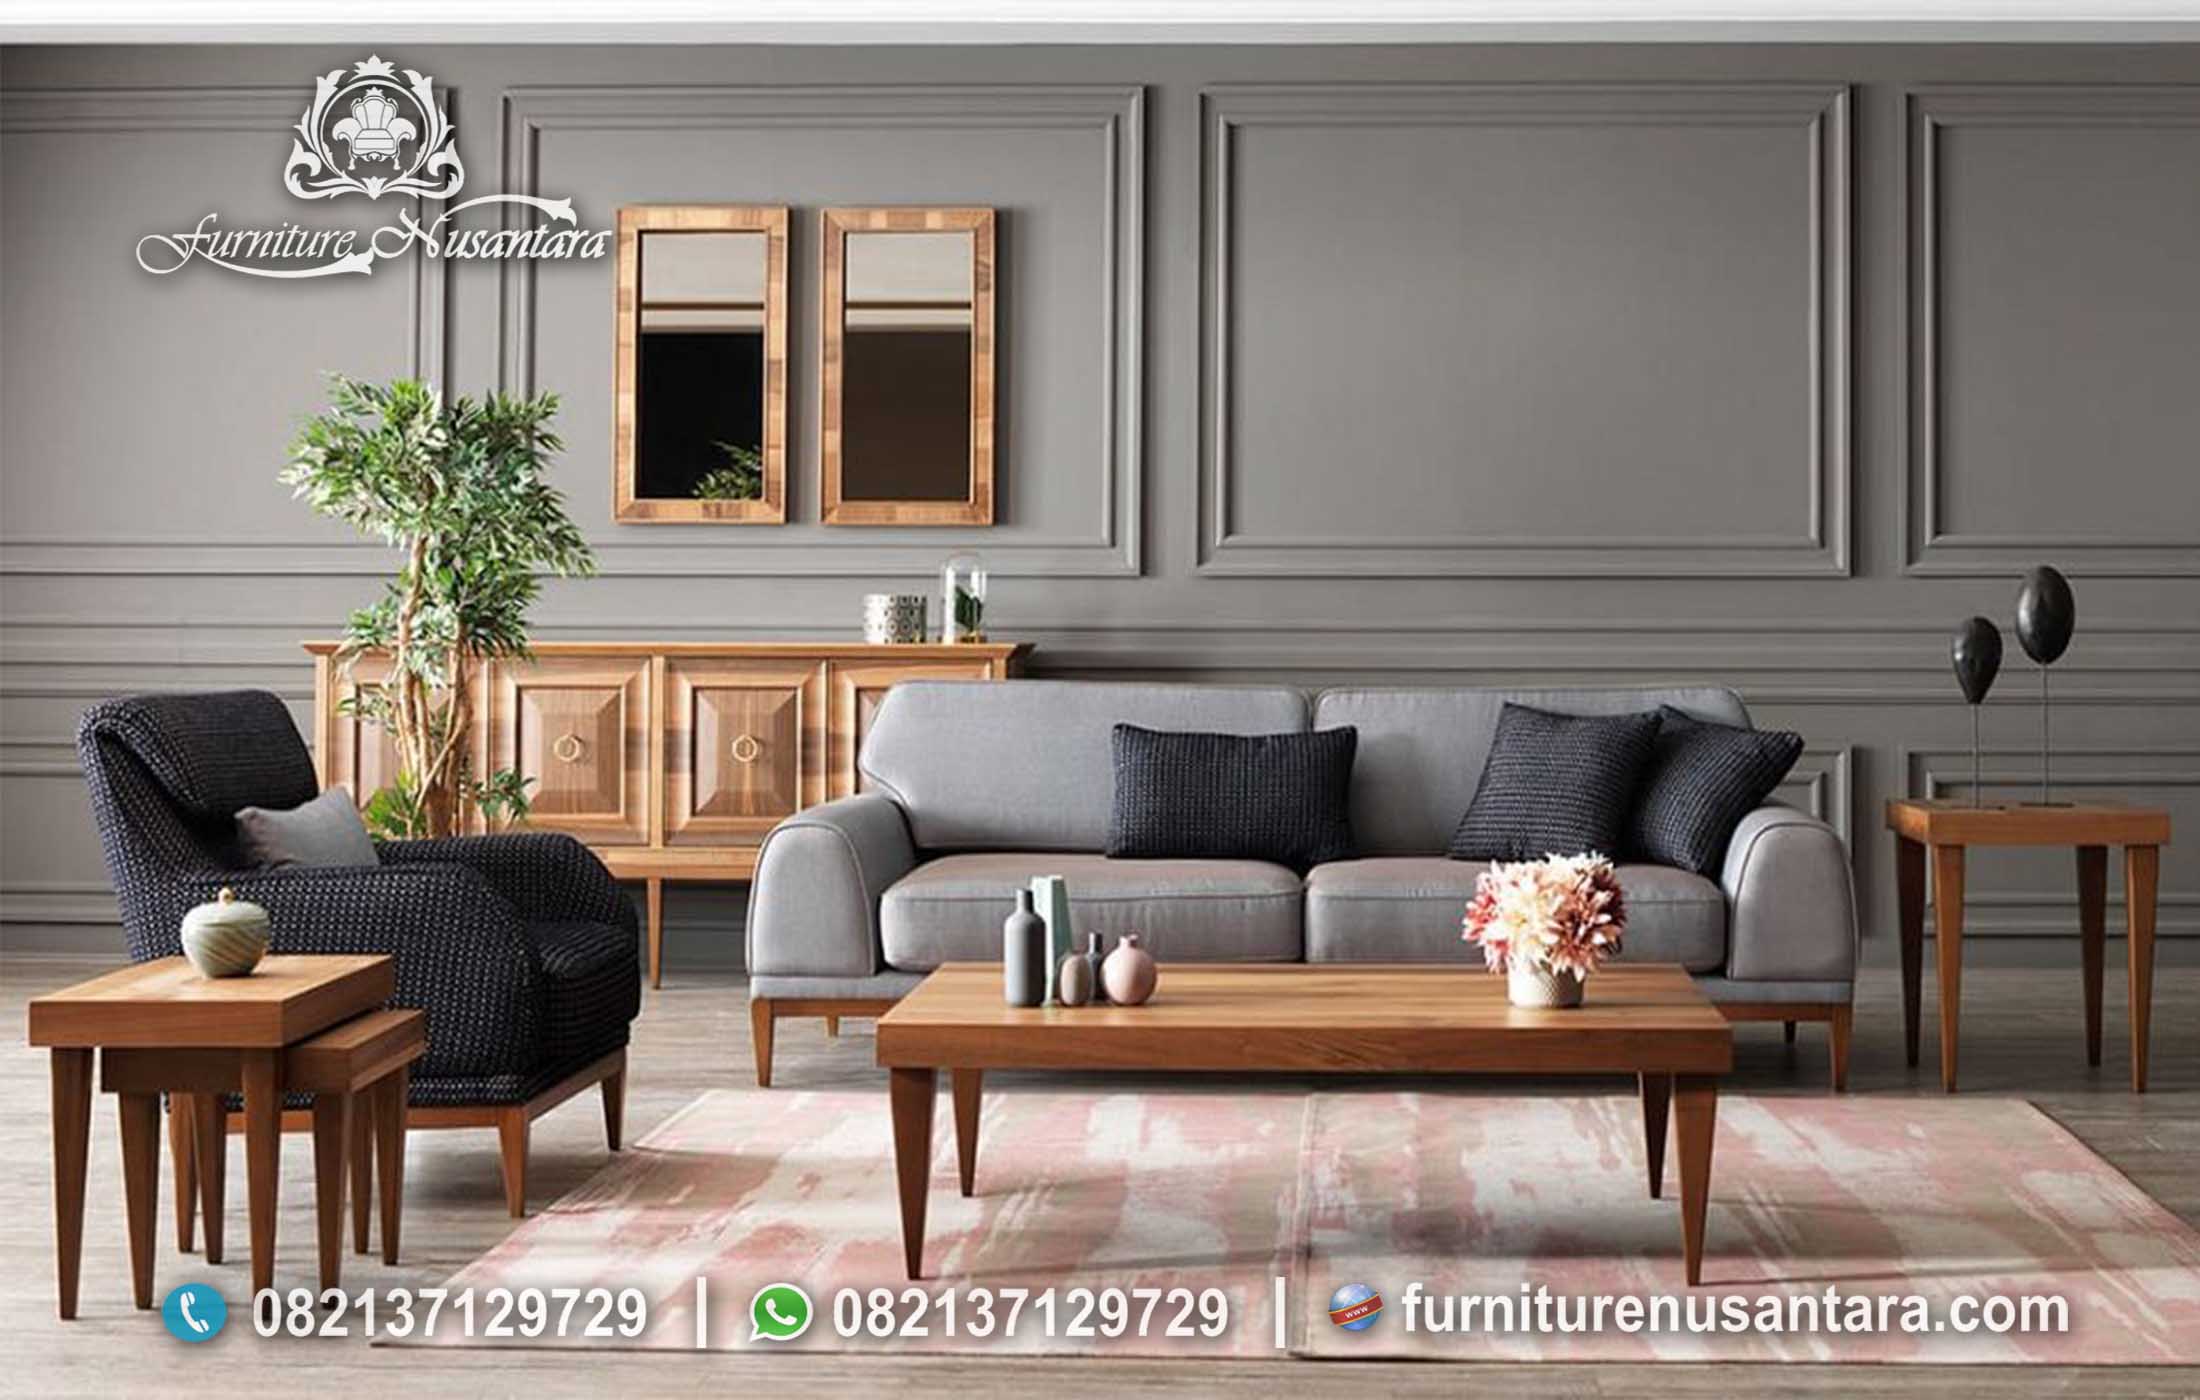 Desain Kursi Sofa Modern Terbaru ST-72, Furniture Nusantara